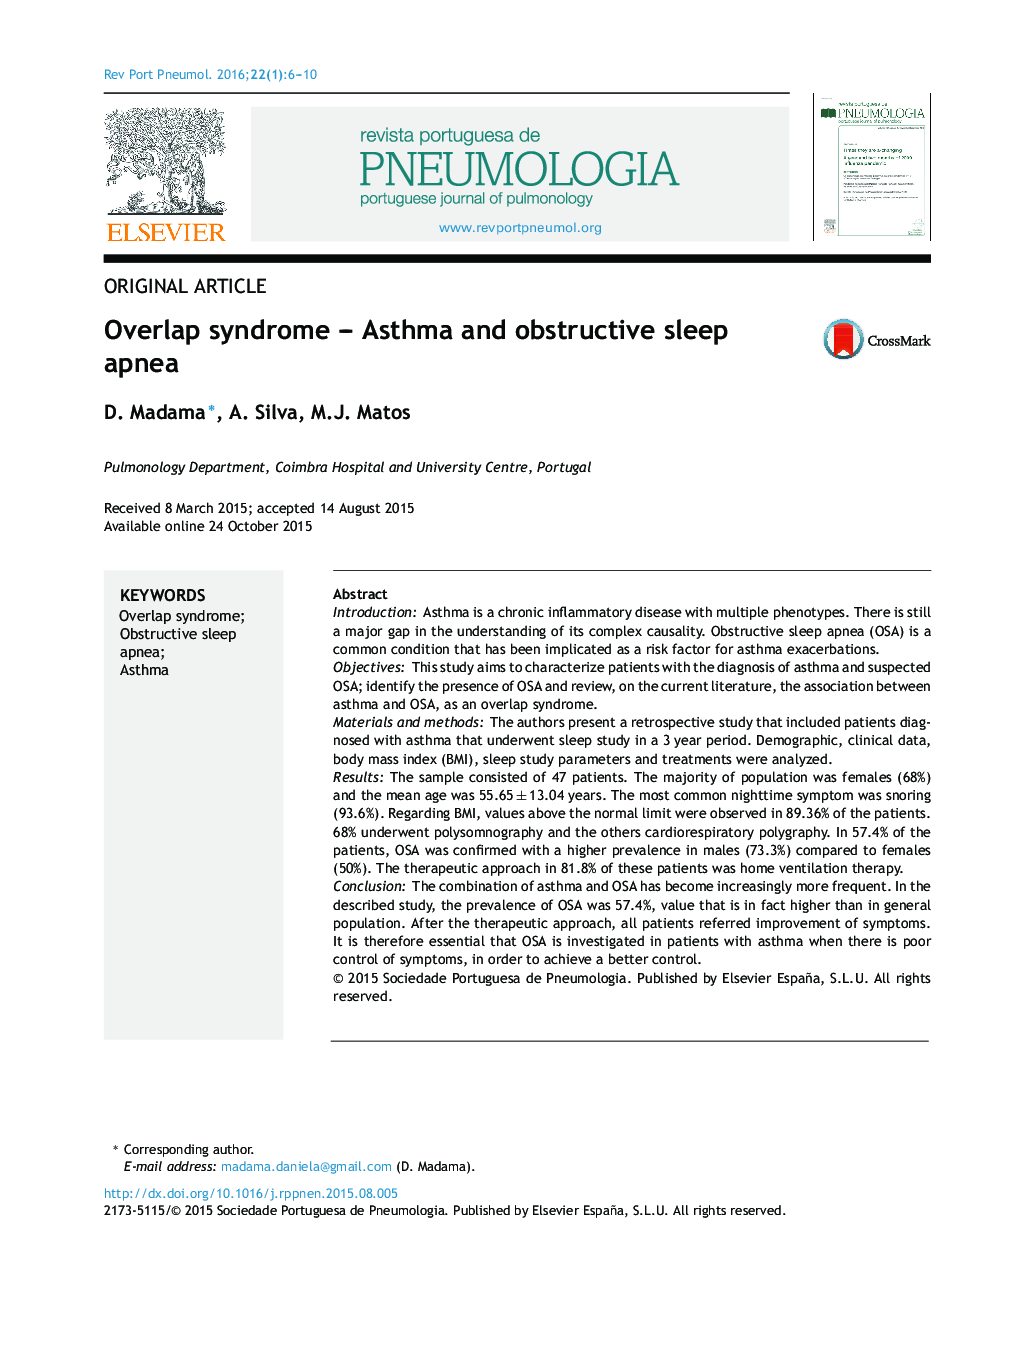 Overlap syndrome – Asthma and obstructive sleep apnea